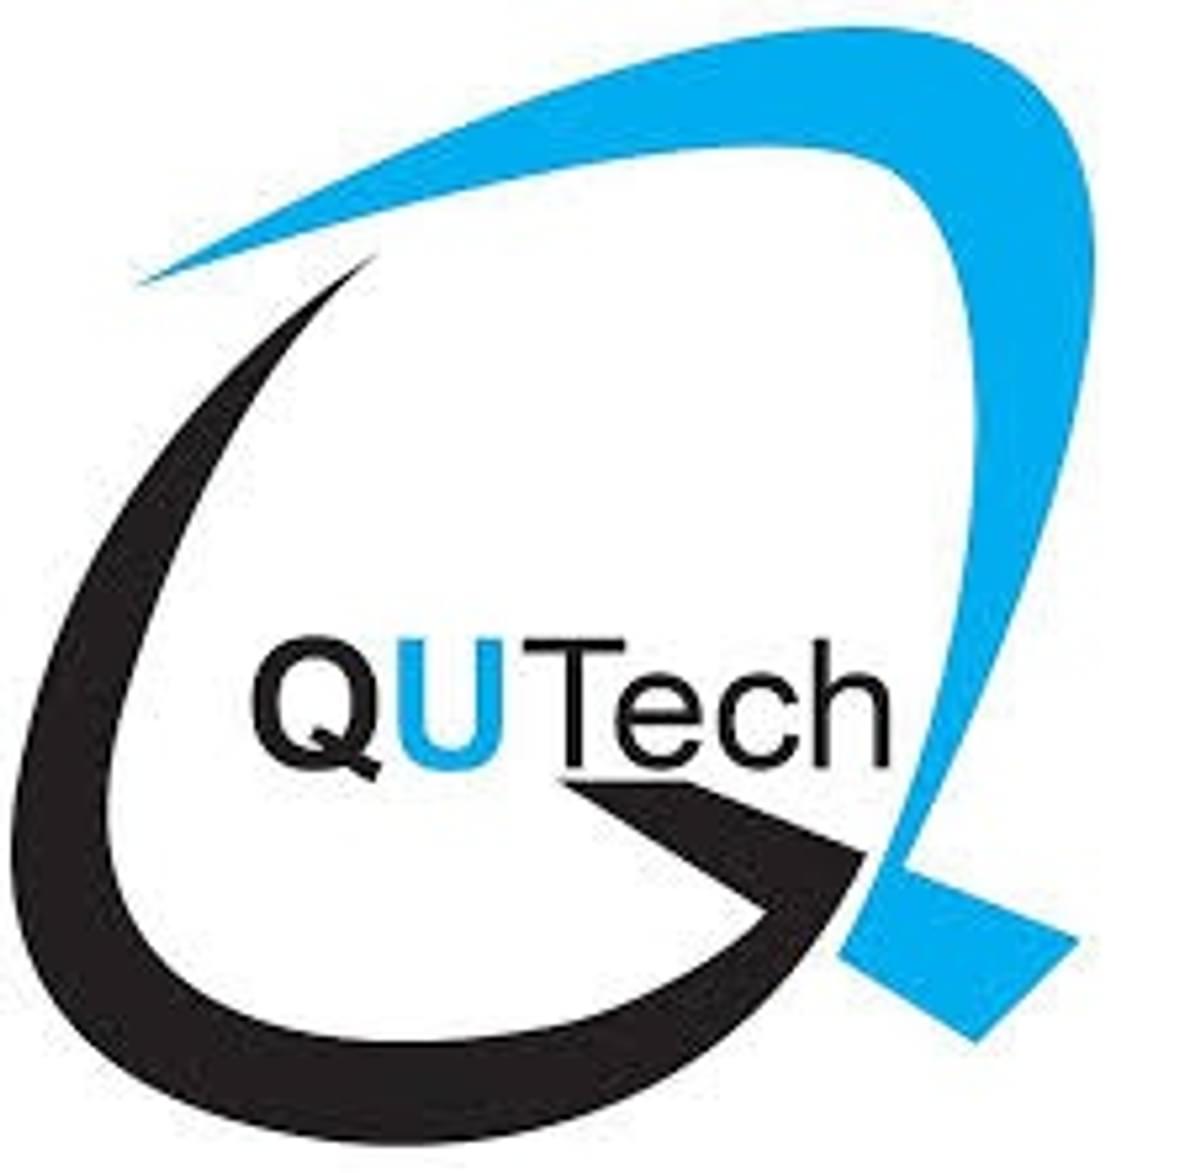 QuTech samenwerking van TU Delft en TNO meldt quantum computing doorbraak image